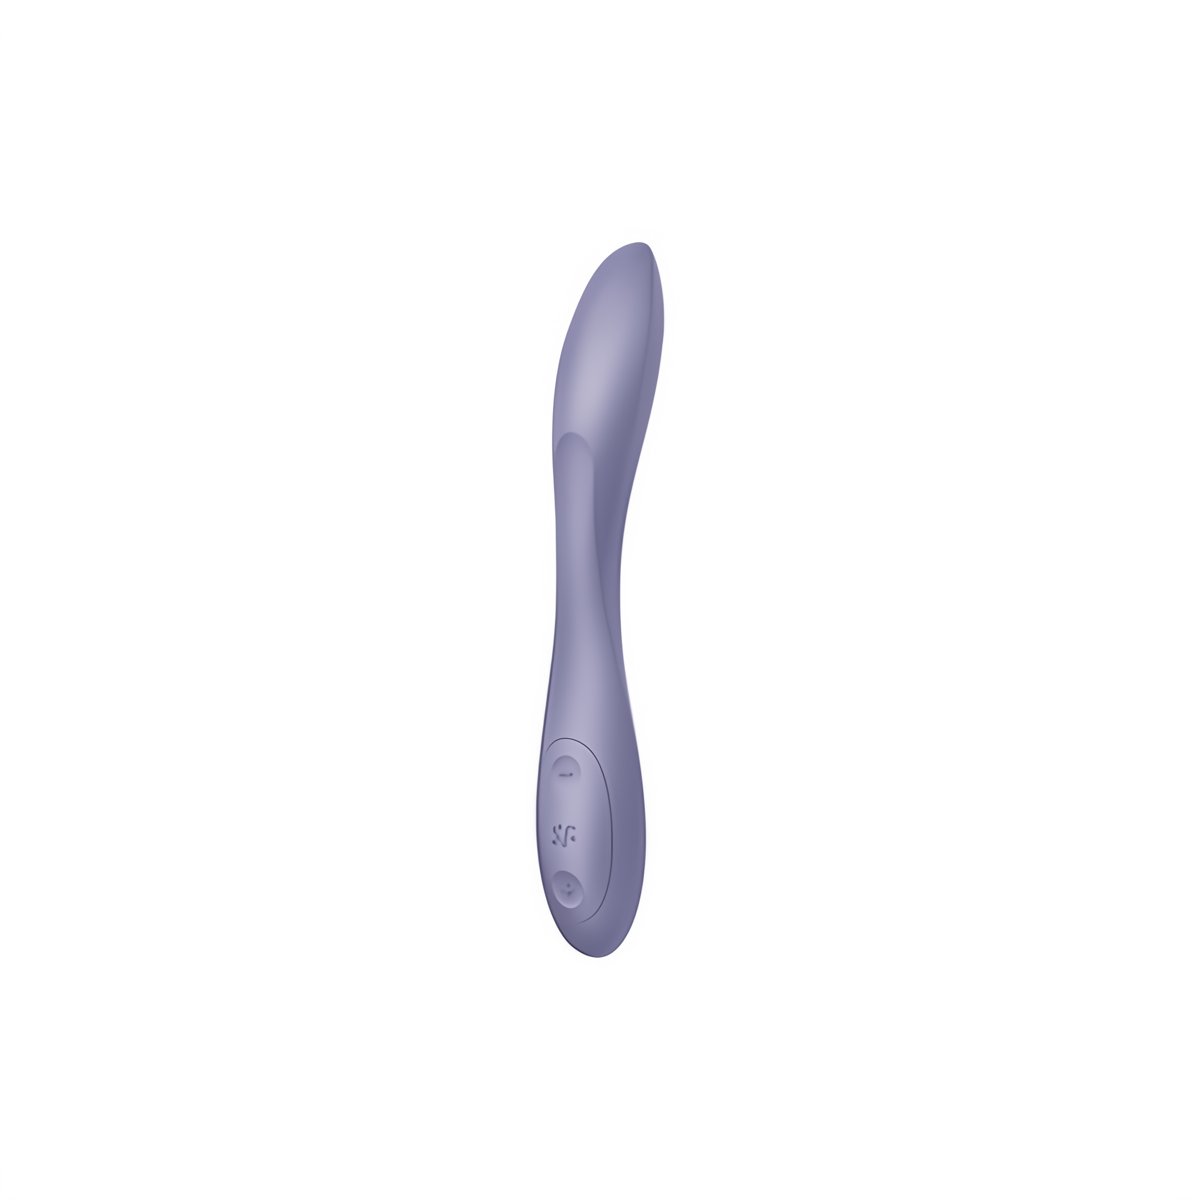 G - Spot Flex 2 - G - Spot Vibrator - EroticToyzProducten,Toys,Vibrators,G - Spot Vibrator,,GeslachtsneutraalSatisfyer